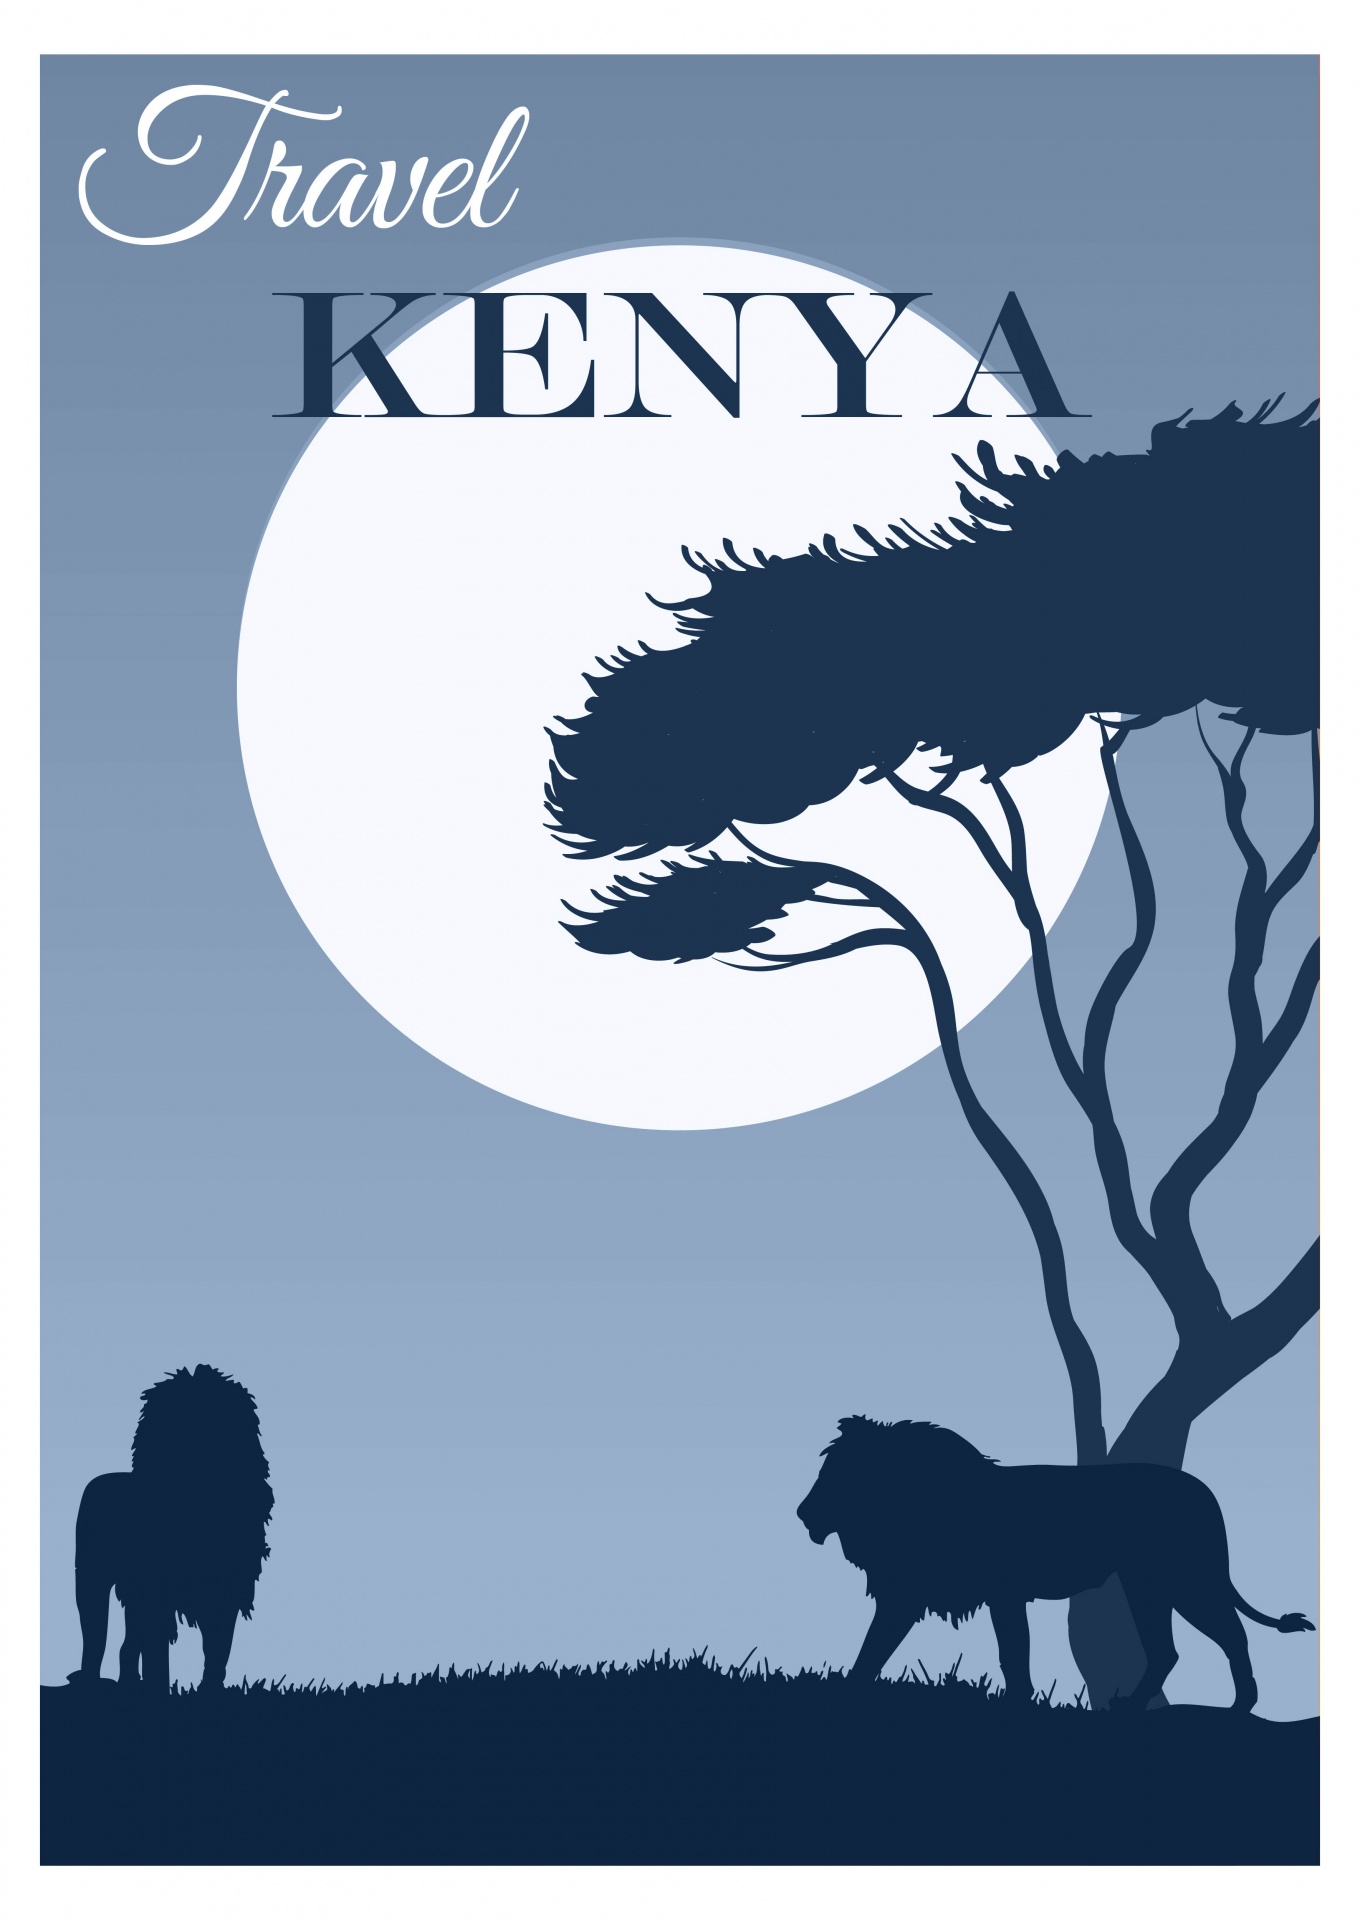 kenya travel poster